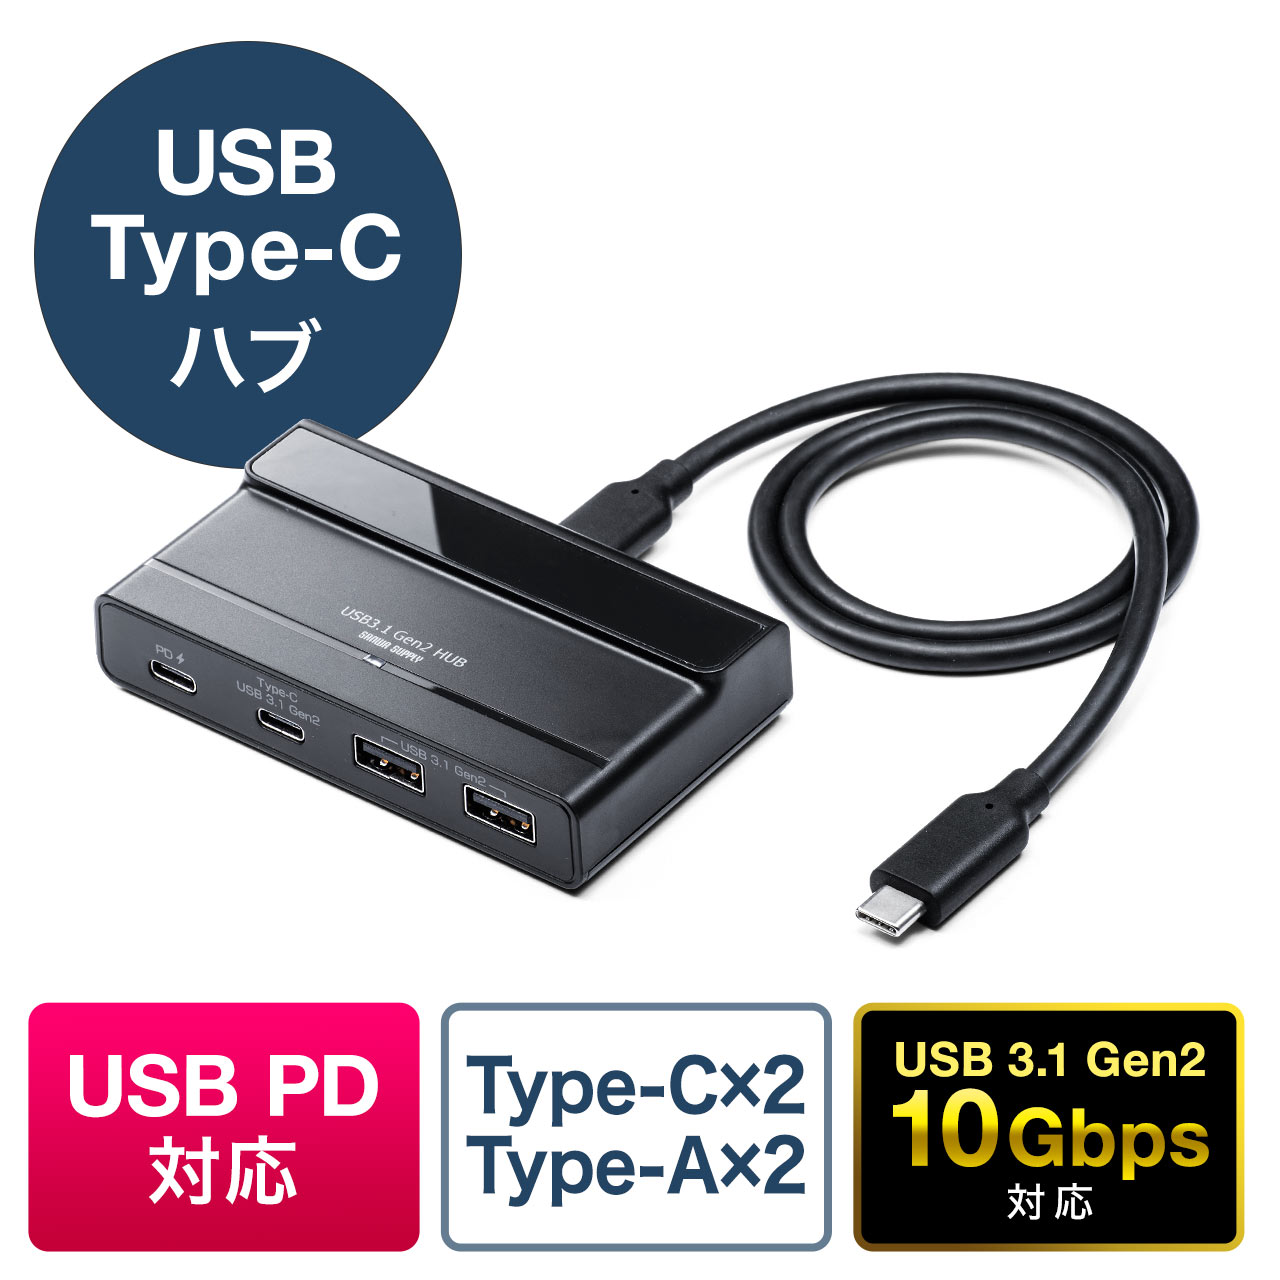 USB Type-Cハブ USB3.1 Gen2 USB Type-C USB A 4ポート USB PD対応